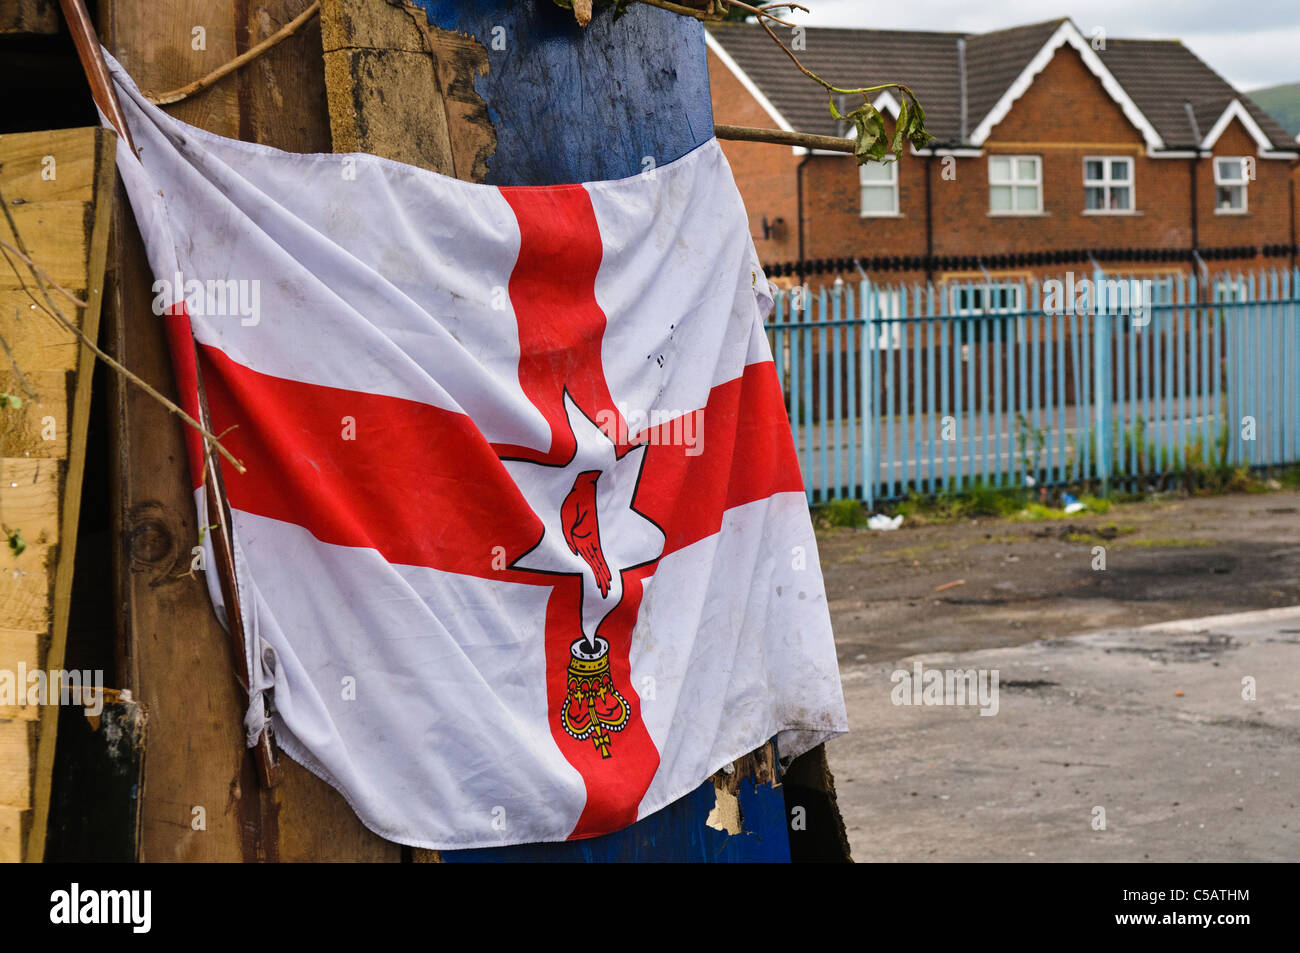 Ulster bandera en una fogata sitio, colgado boca abajo por los protestantes, un signo de falta de respeto. Foto de stock